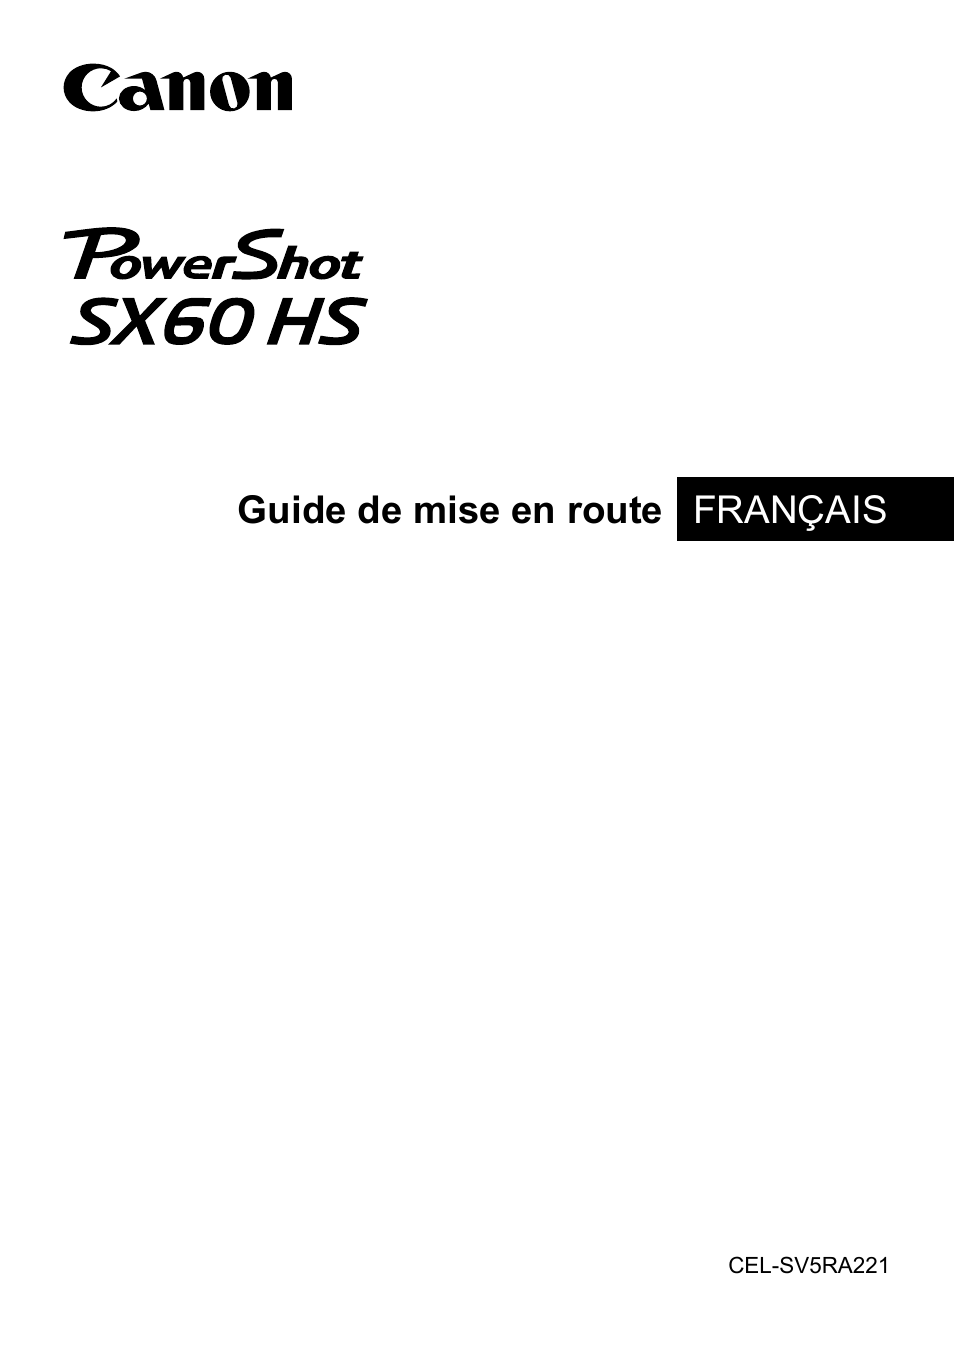 Canon PowerShot SX60 HS Manuel d'utilisation | Pages: 9